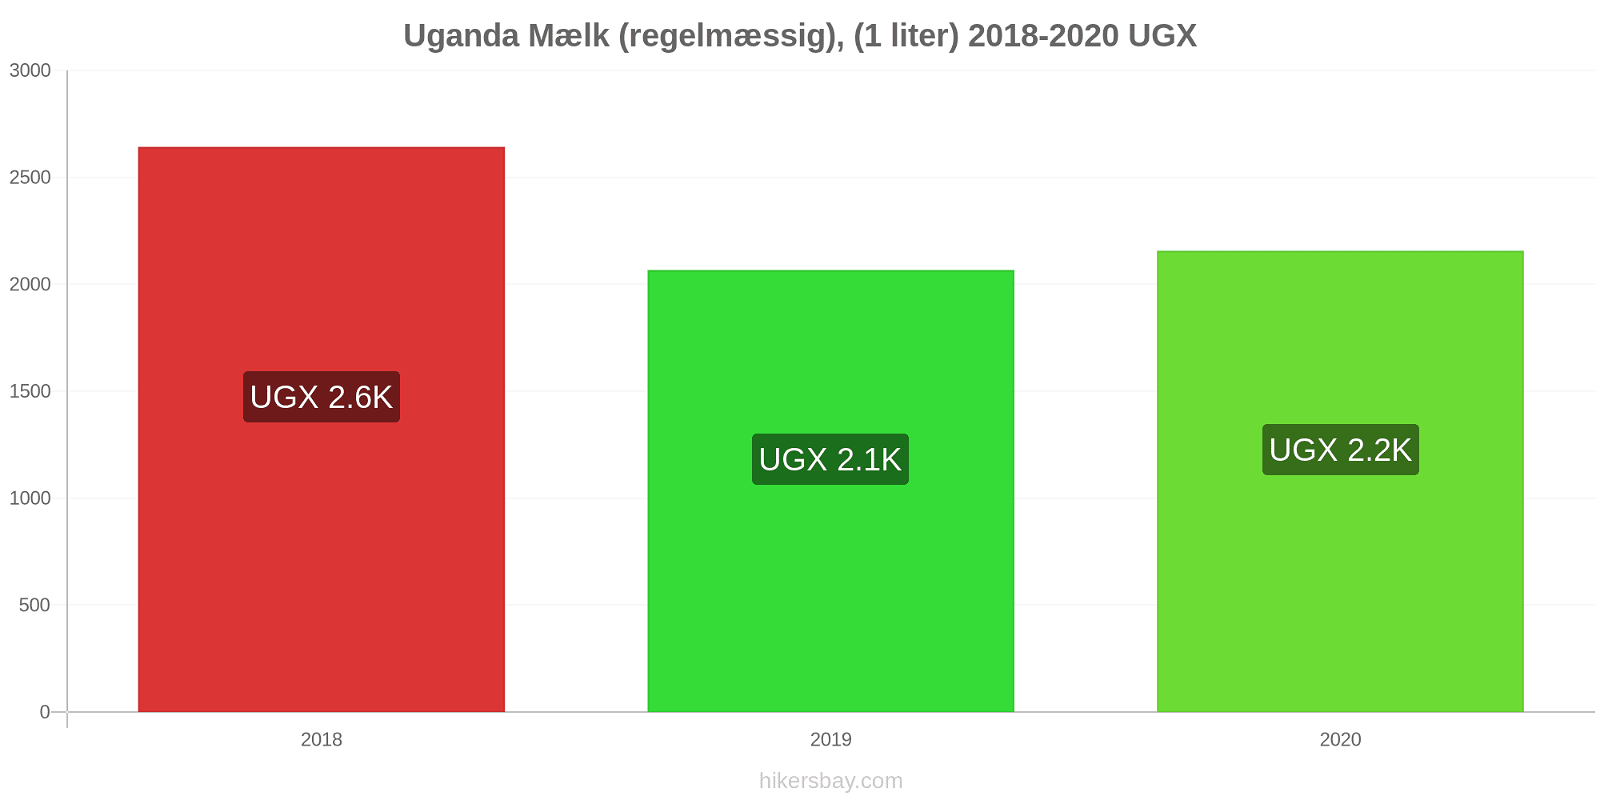 Uganda prisændringer Mælk (regelmæssig), (1 liter) hikersbay.com